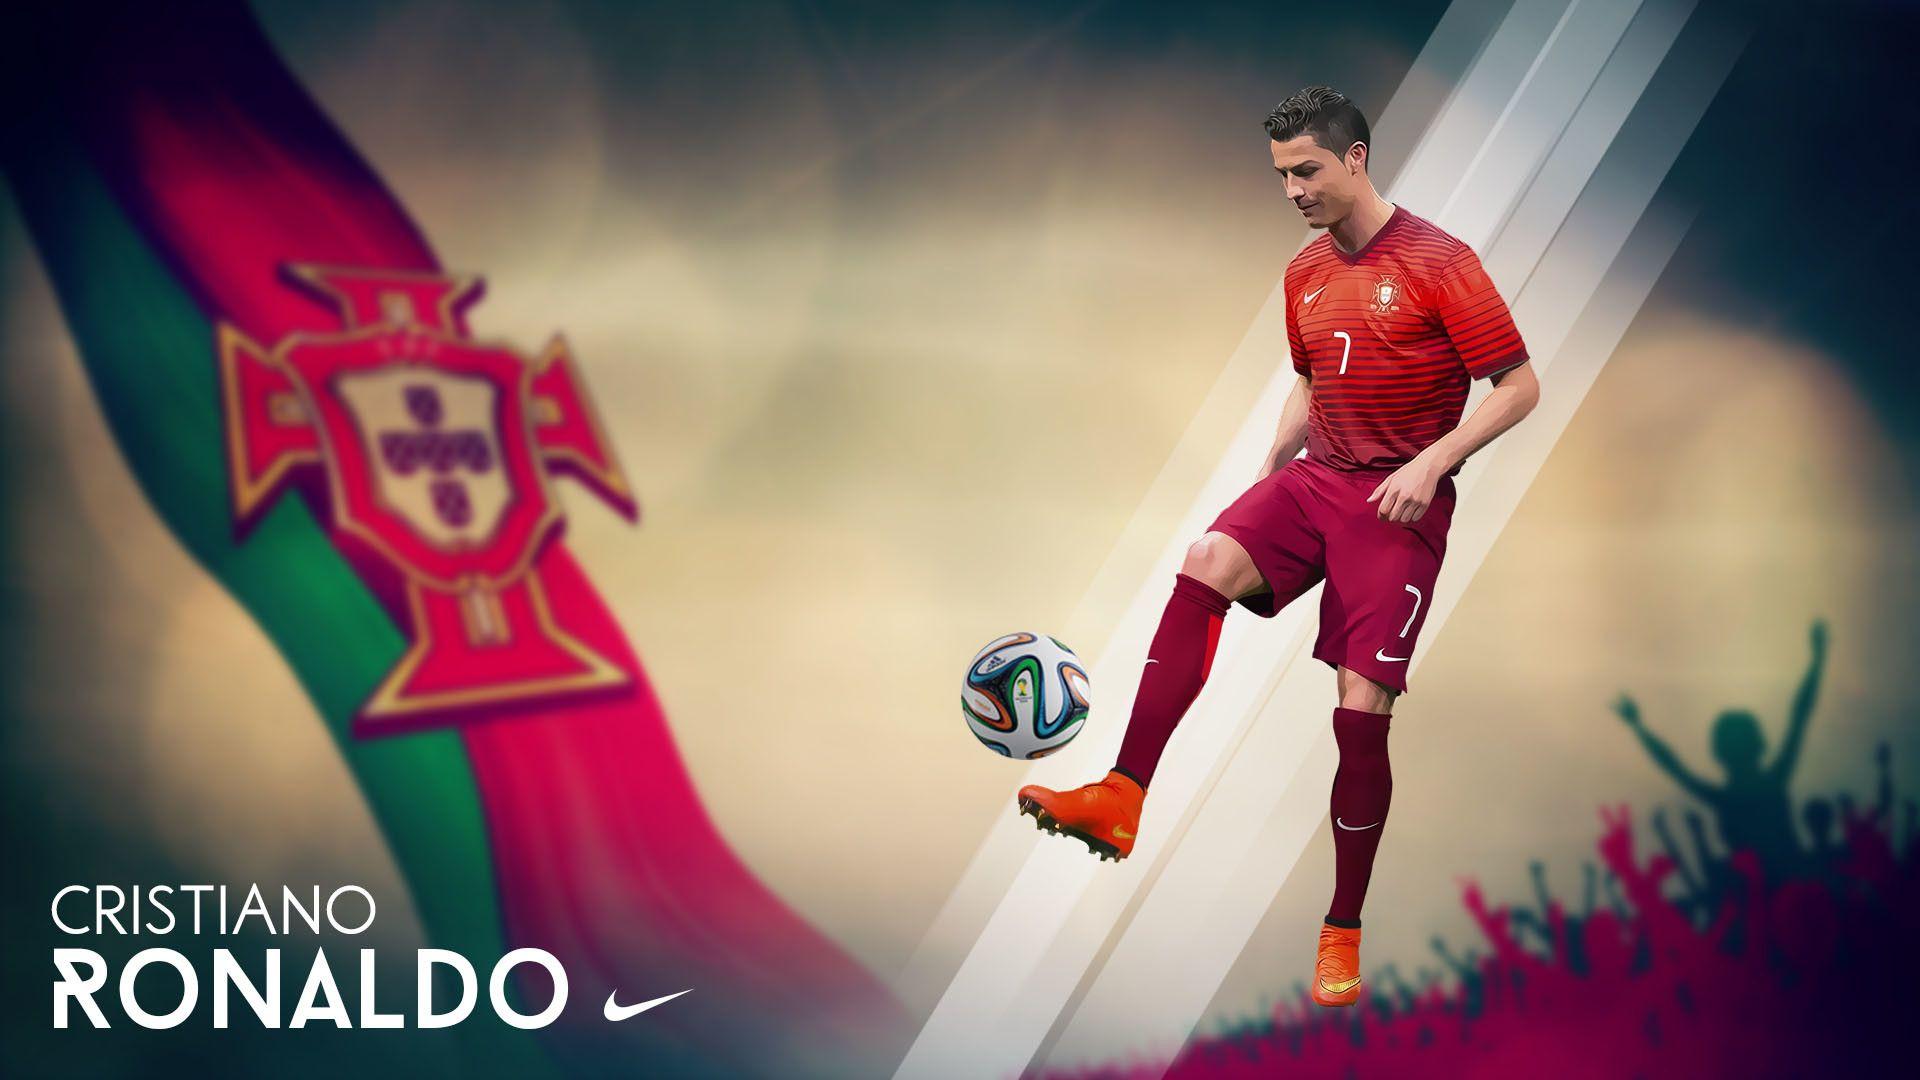 Cristiano Ronaldo Wallpaper Nike background picture